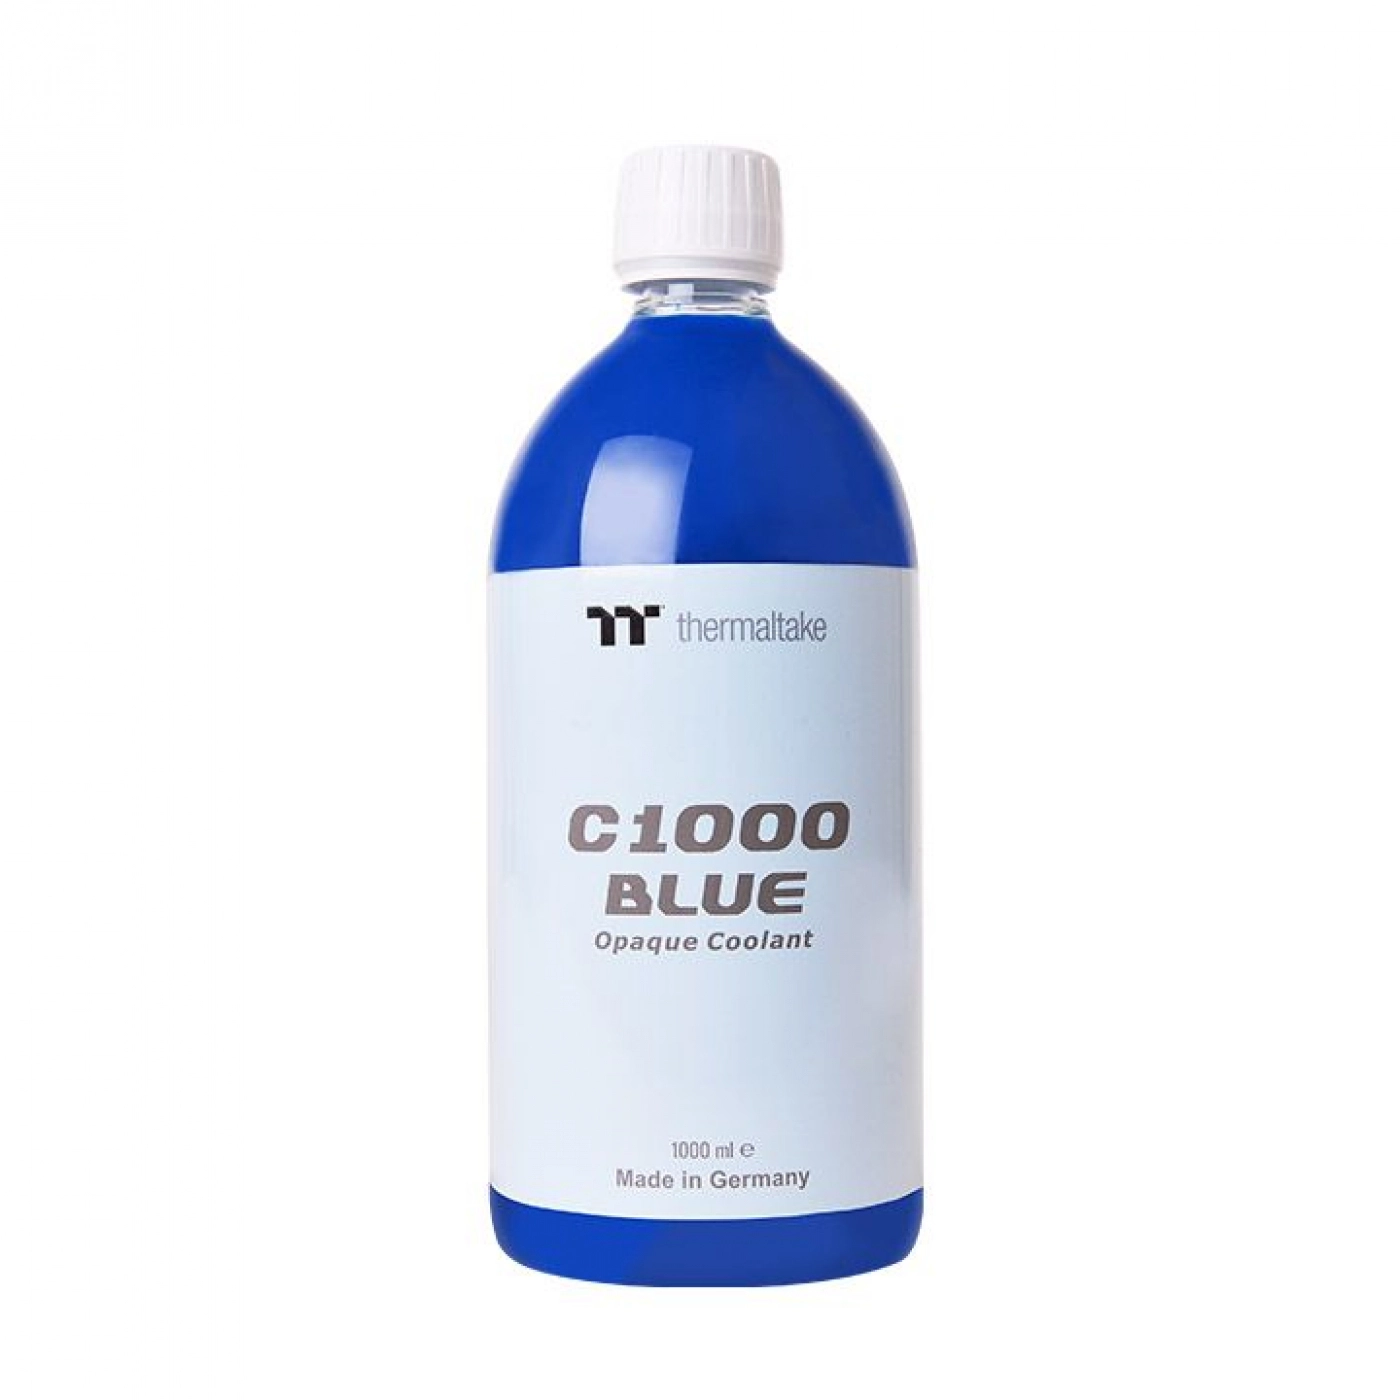 Купить Охлаждающая жидкость Thermaltake C1000 Opaque Coolant Blue (CL-W114-OS00BU-A) - фото 1